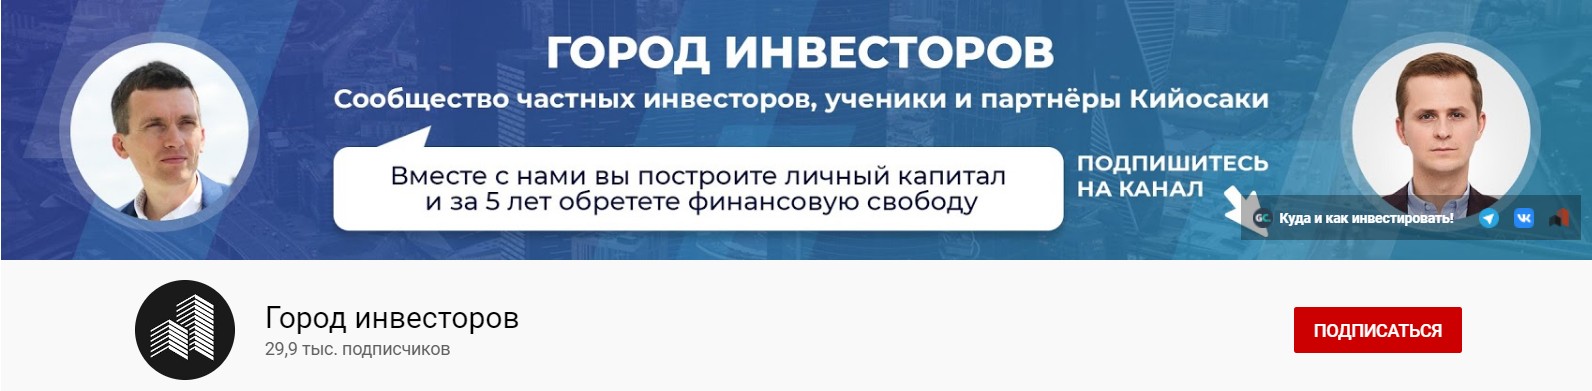 Канал Ютуб инвестора Алексея Унжакова